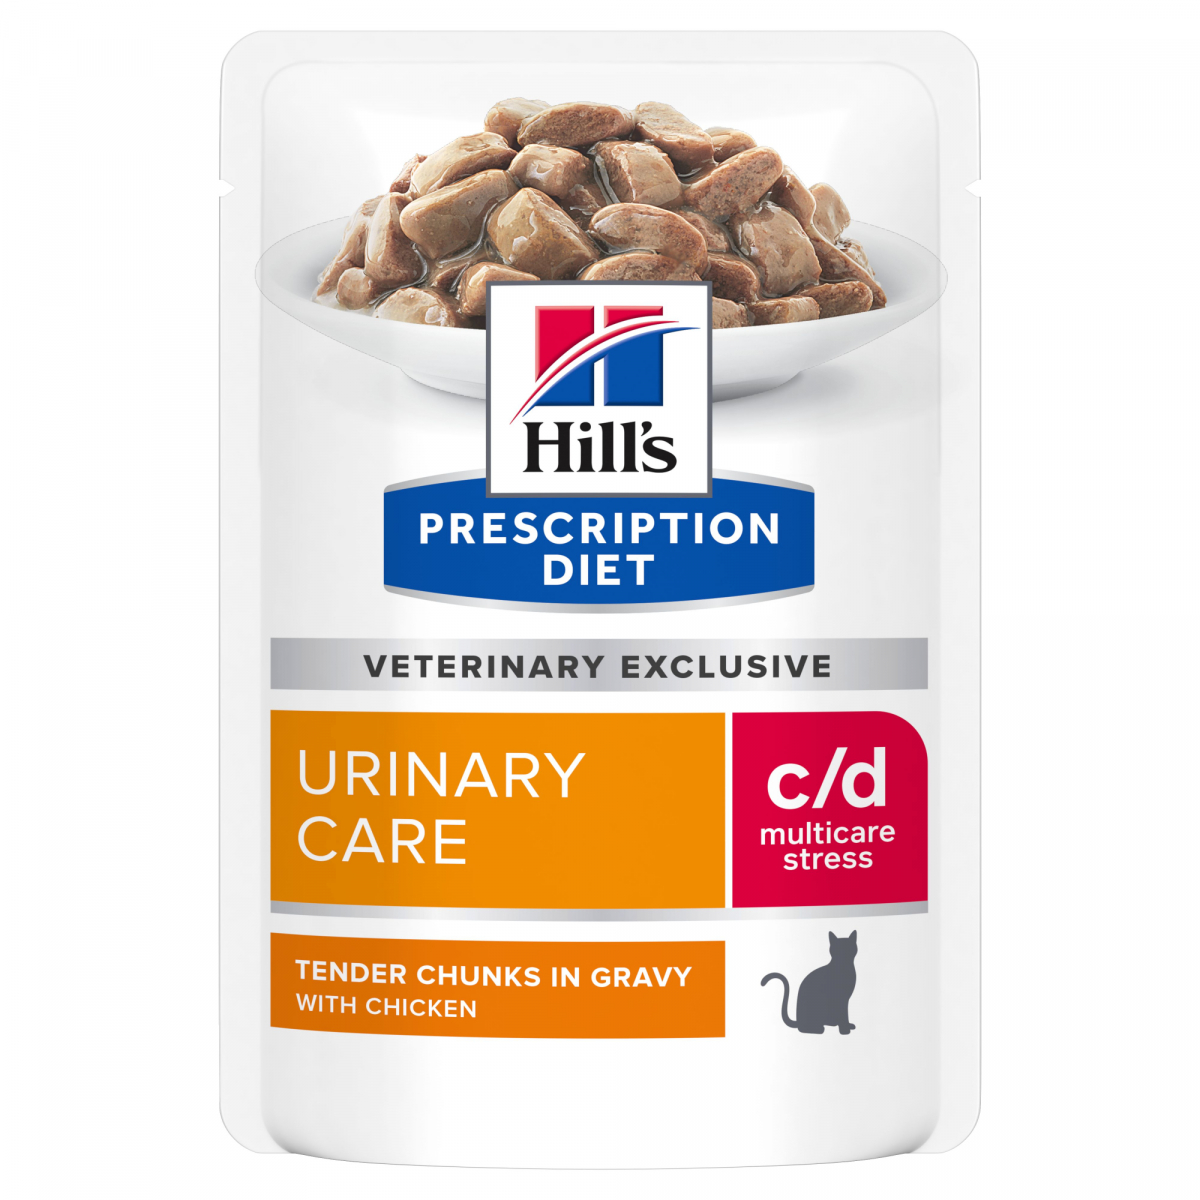 HILL'S Prescription Diet c/d Urinary Stress Multicare para gatos - 2 sabores